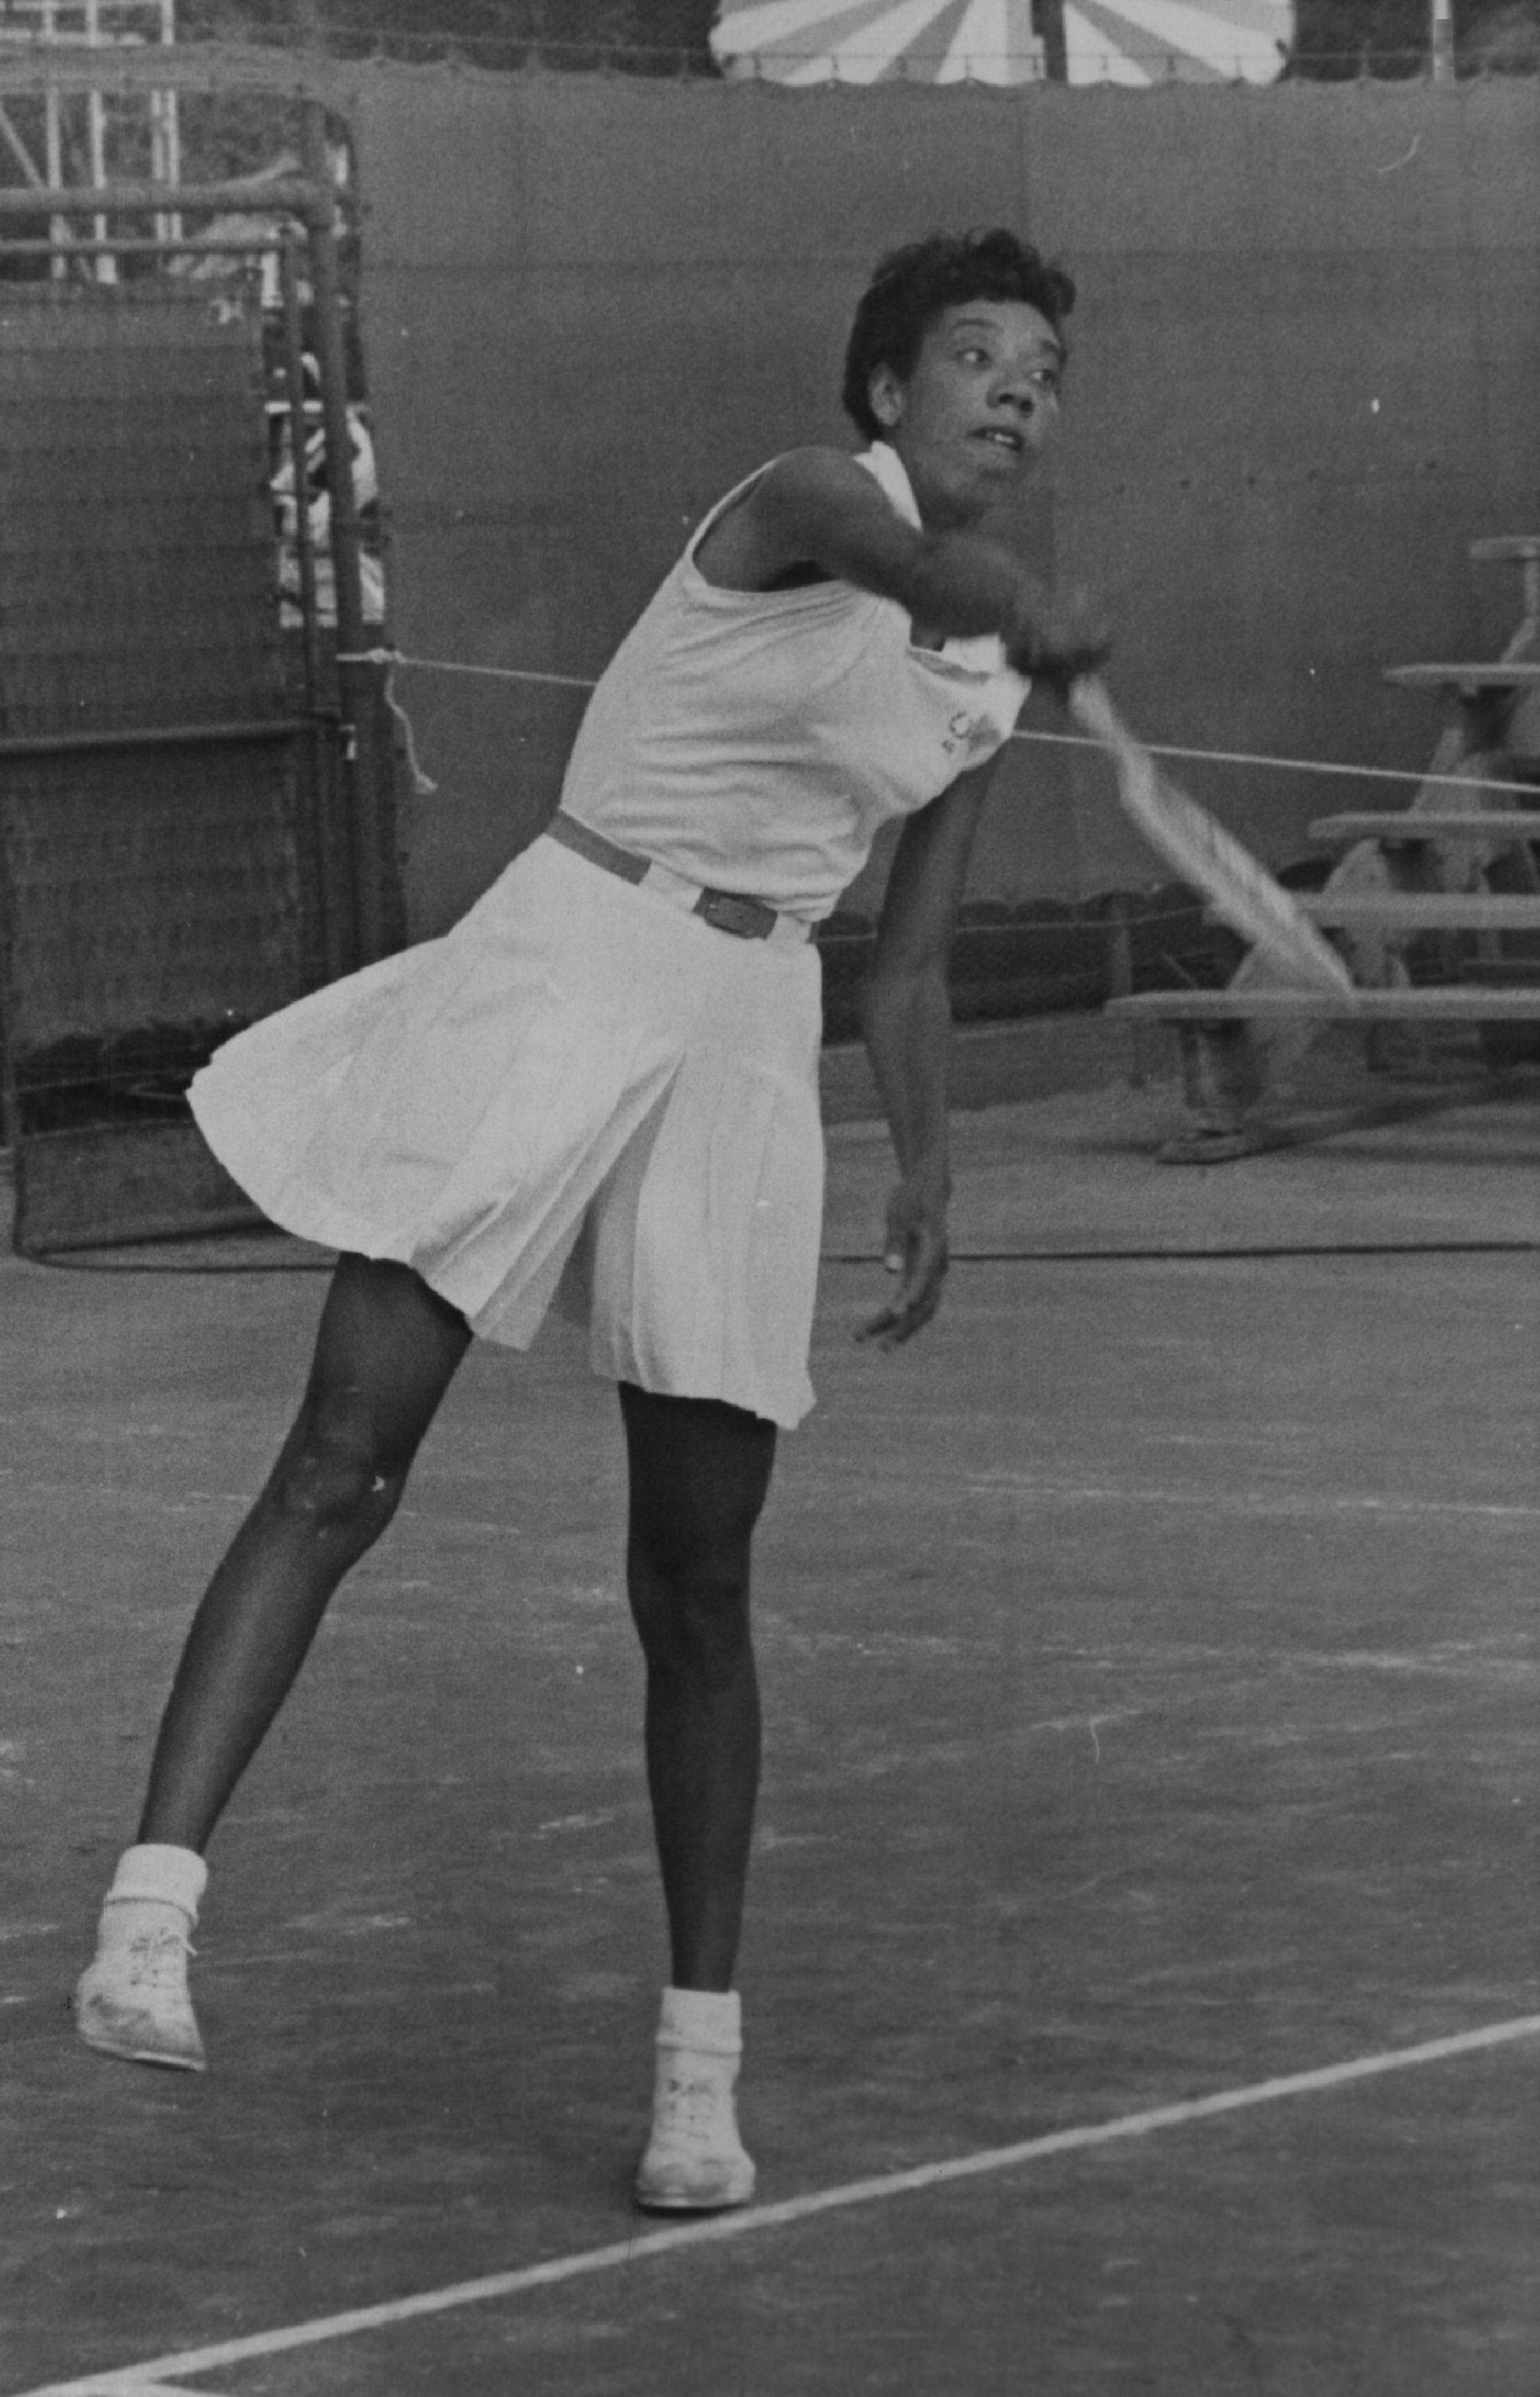 Althea Gibson, con un modelo similar al que ha replicado Zendaya, en un torneo en 1956.